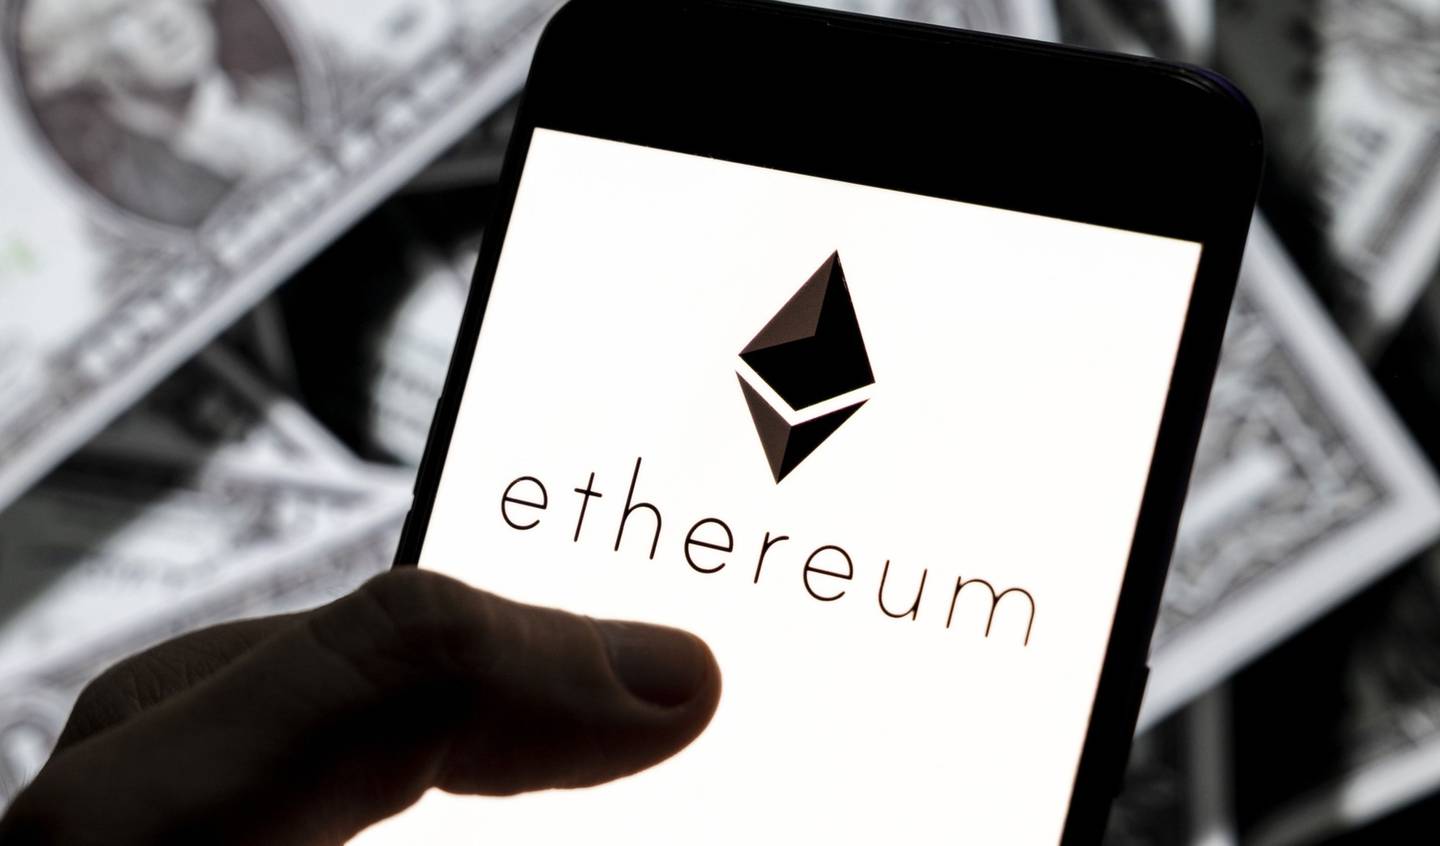 Ethereum fue creada en julio de 2015 como una blockchain abierta que permite que cualquier persona despliegue aplicaciones para interactuar con los usuarios, lo que la ha vuelto una de las más populares en la industria.dfd